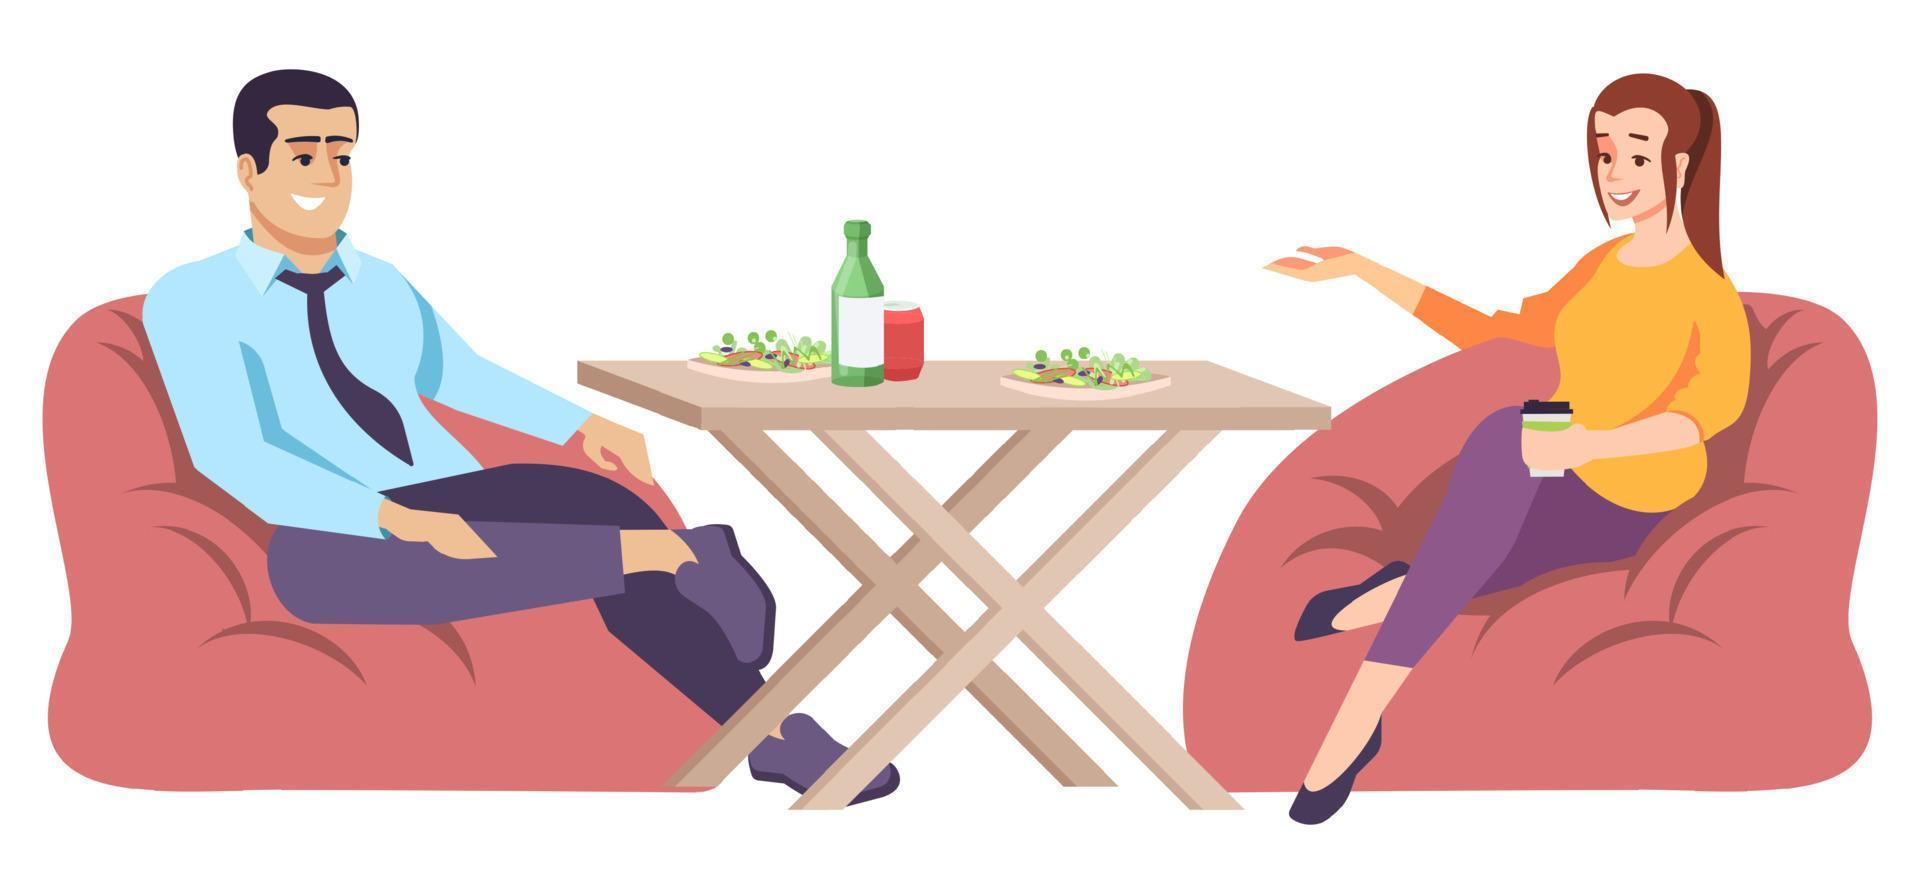 homme et femme à table illustration vectorielle plane. coupé de personnes parlant au déjeuner, assis sur des chaises en sac. vecteur